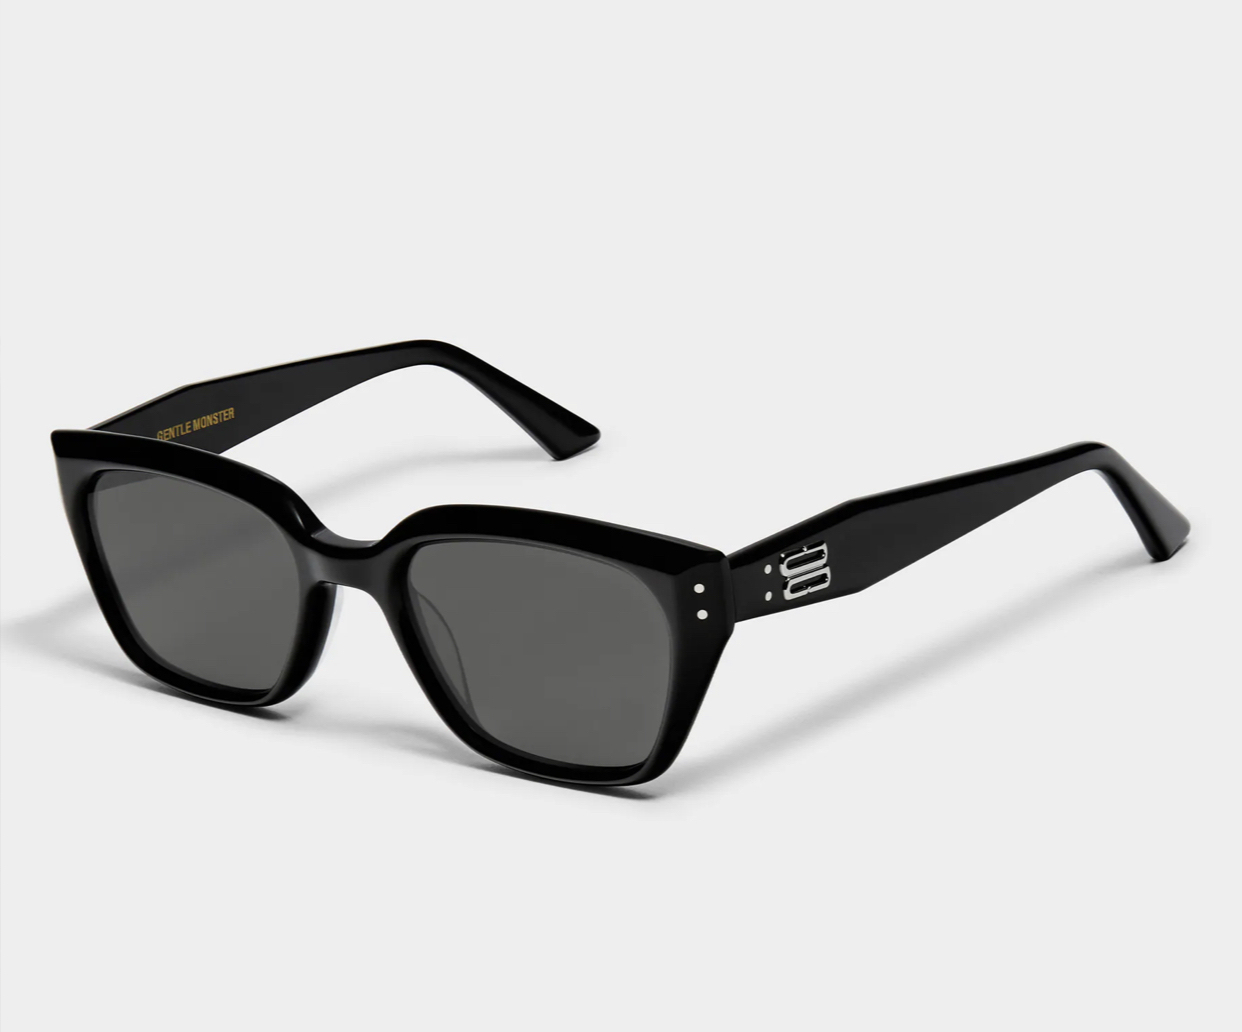 GENTLE MONSTER Square Sunglasses for Women